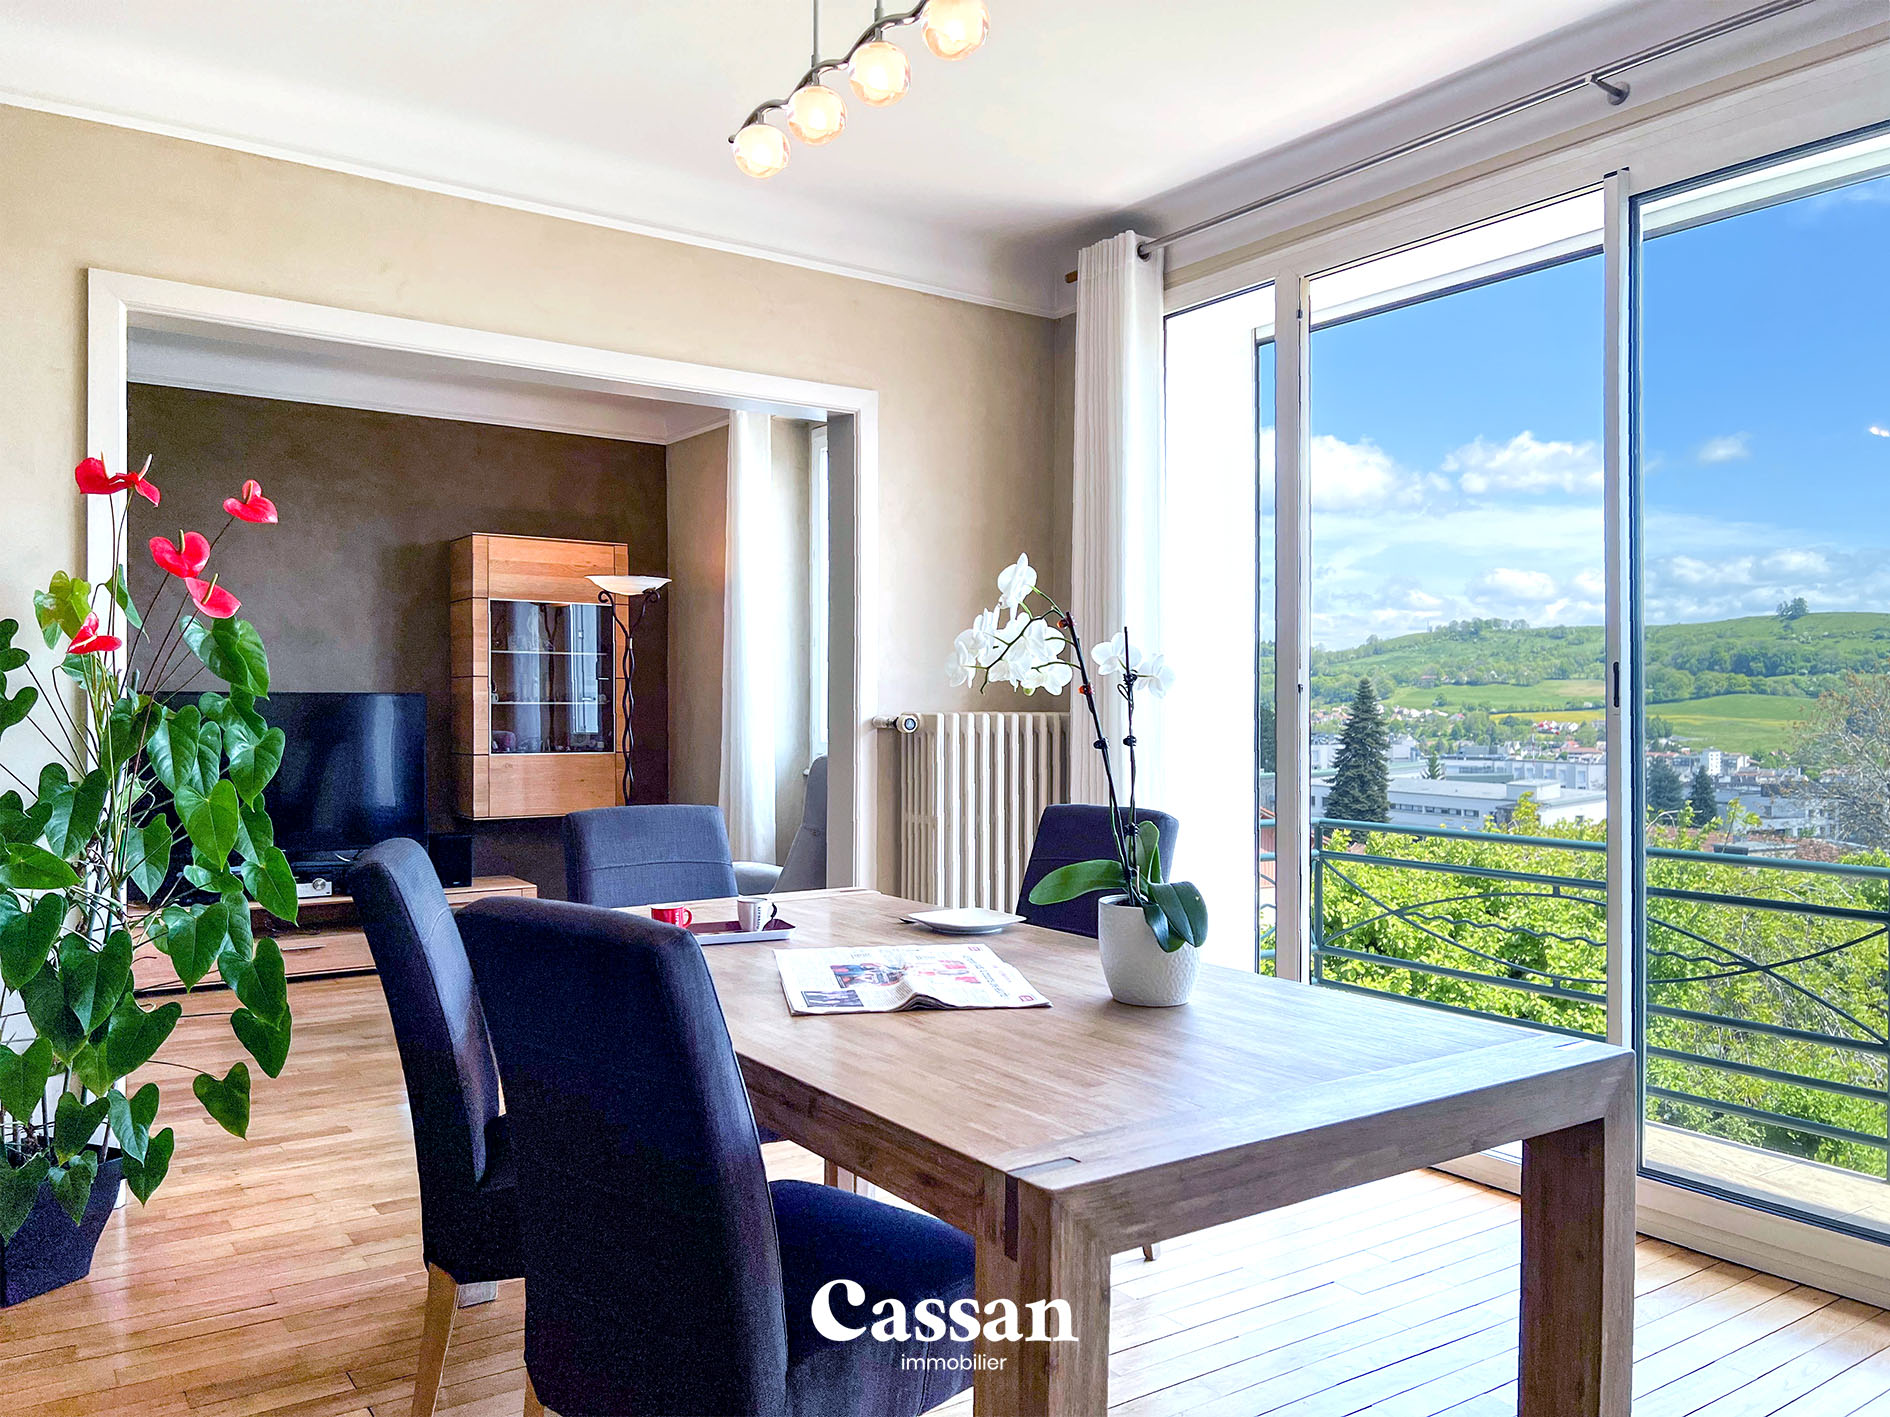 Séjour vue maison à vendre Aurillac Cassan immobilier